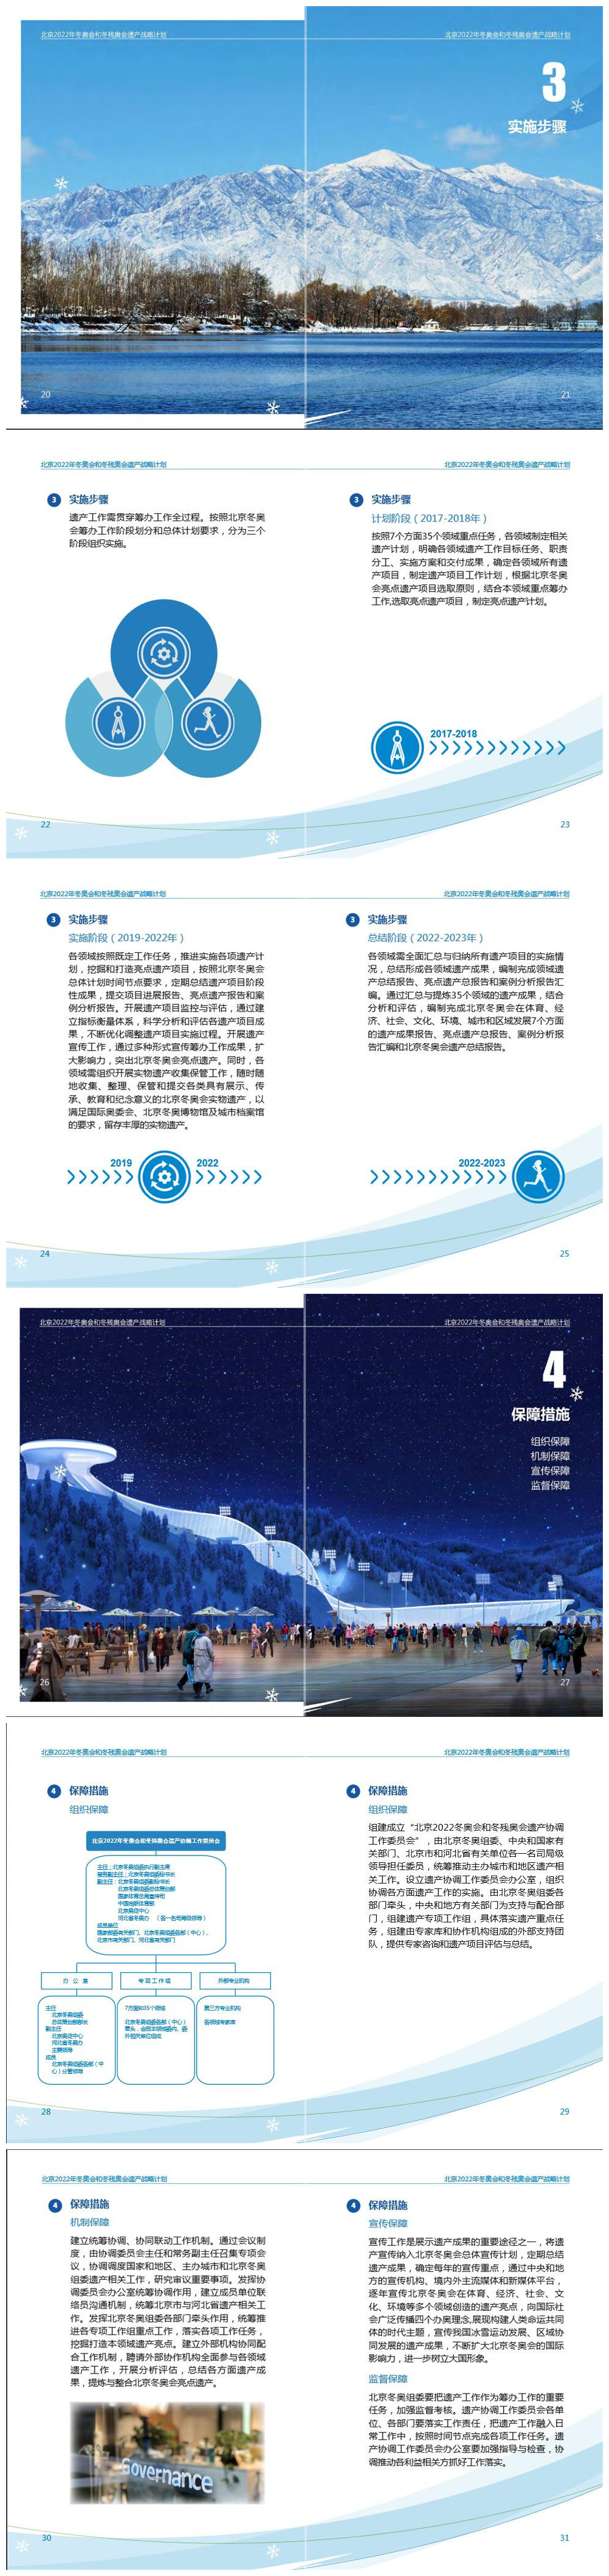 《北京2022年冬奥会和冬残奥会遗产战略计划》3